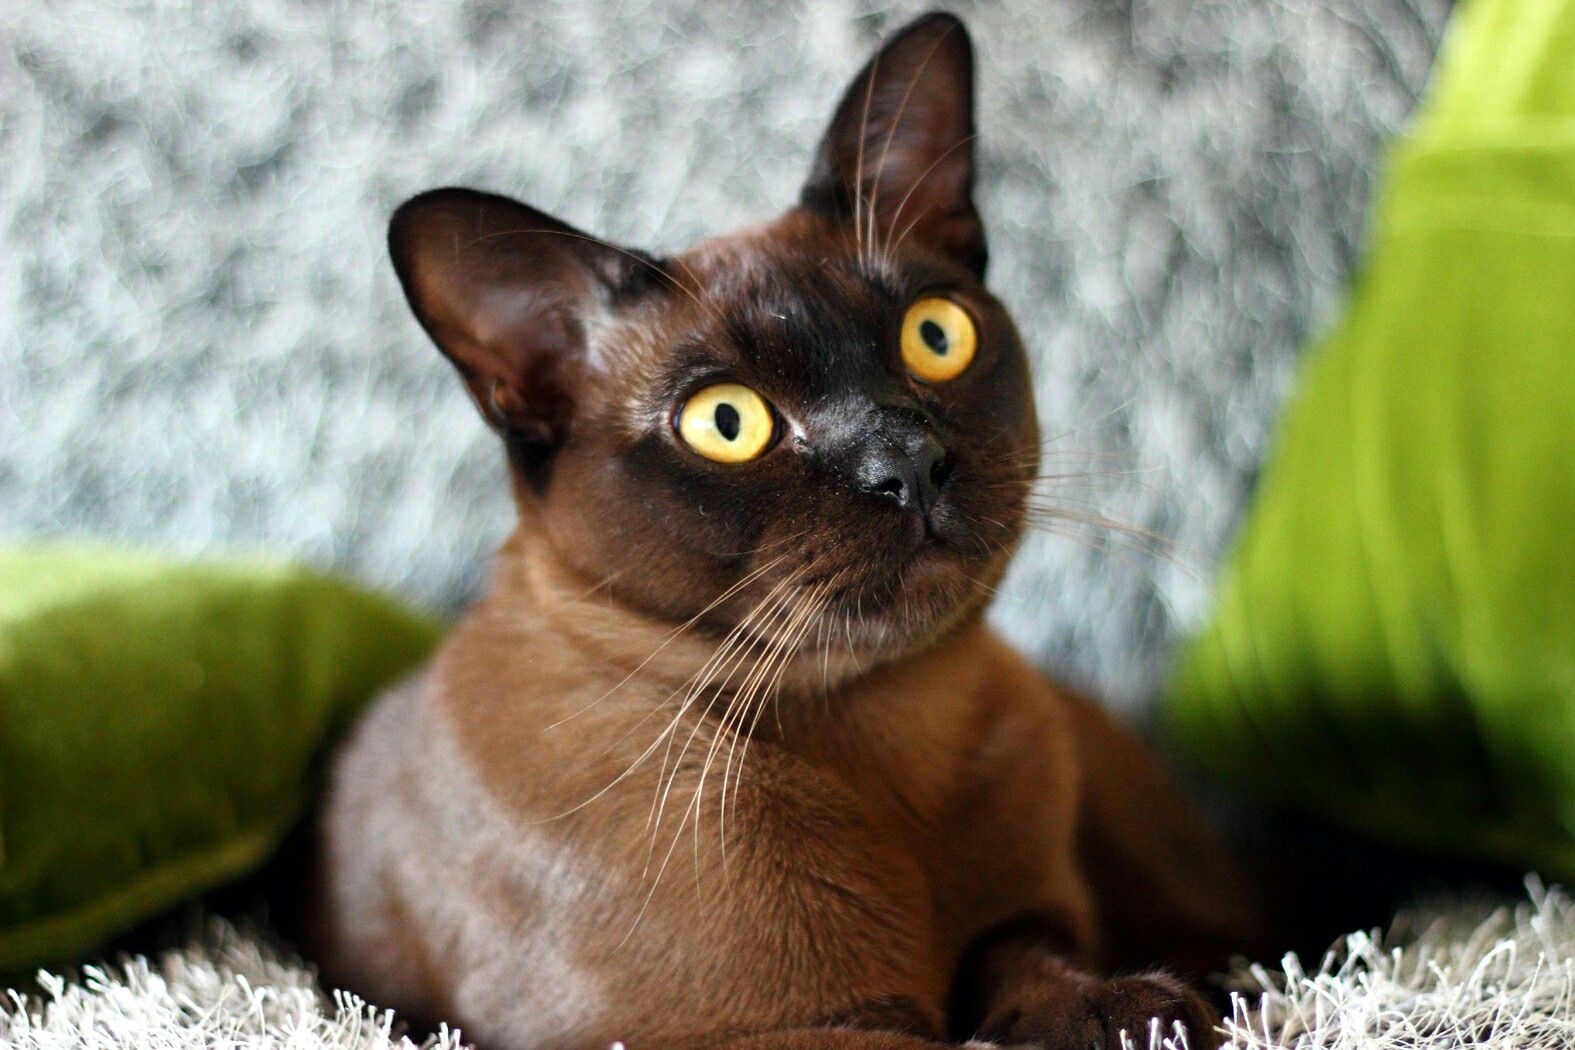 Burmese cat